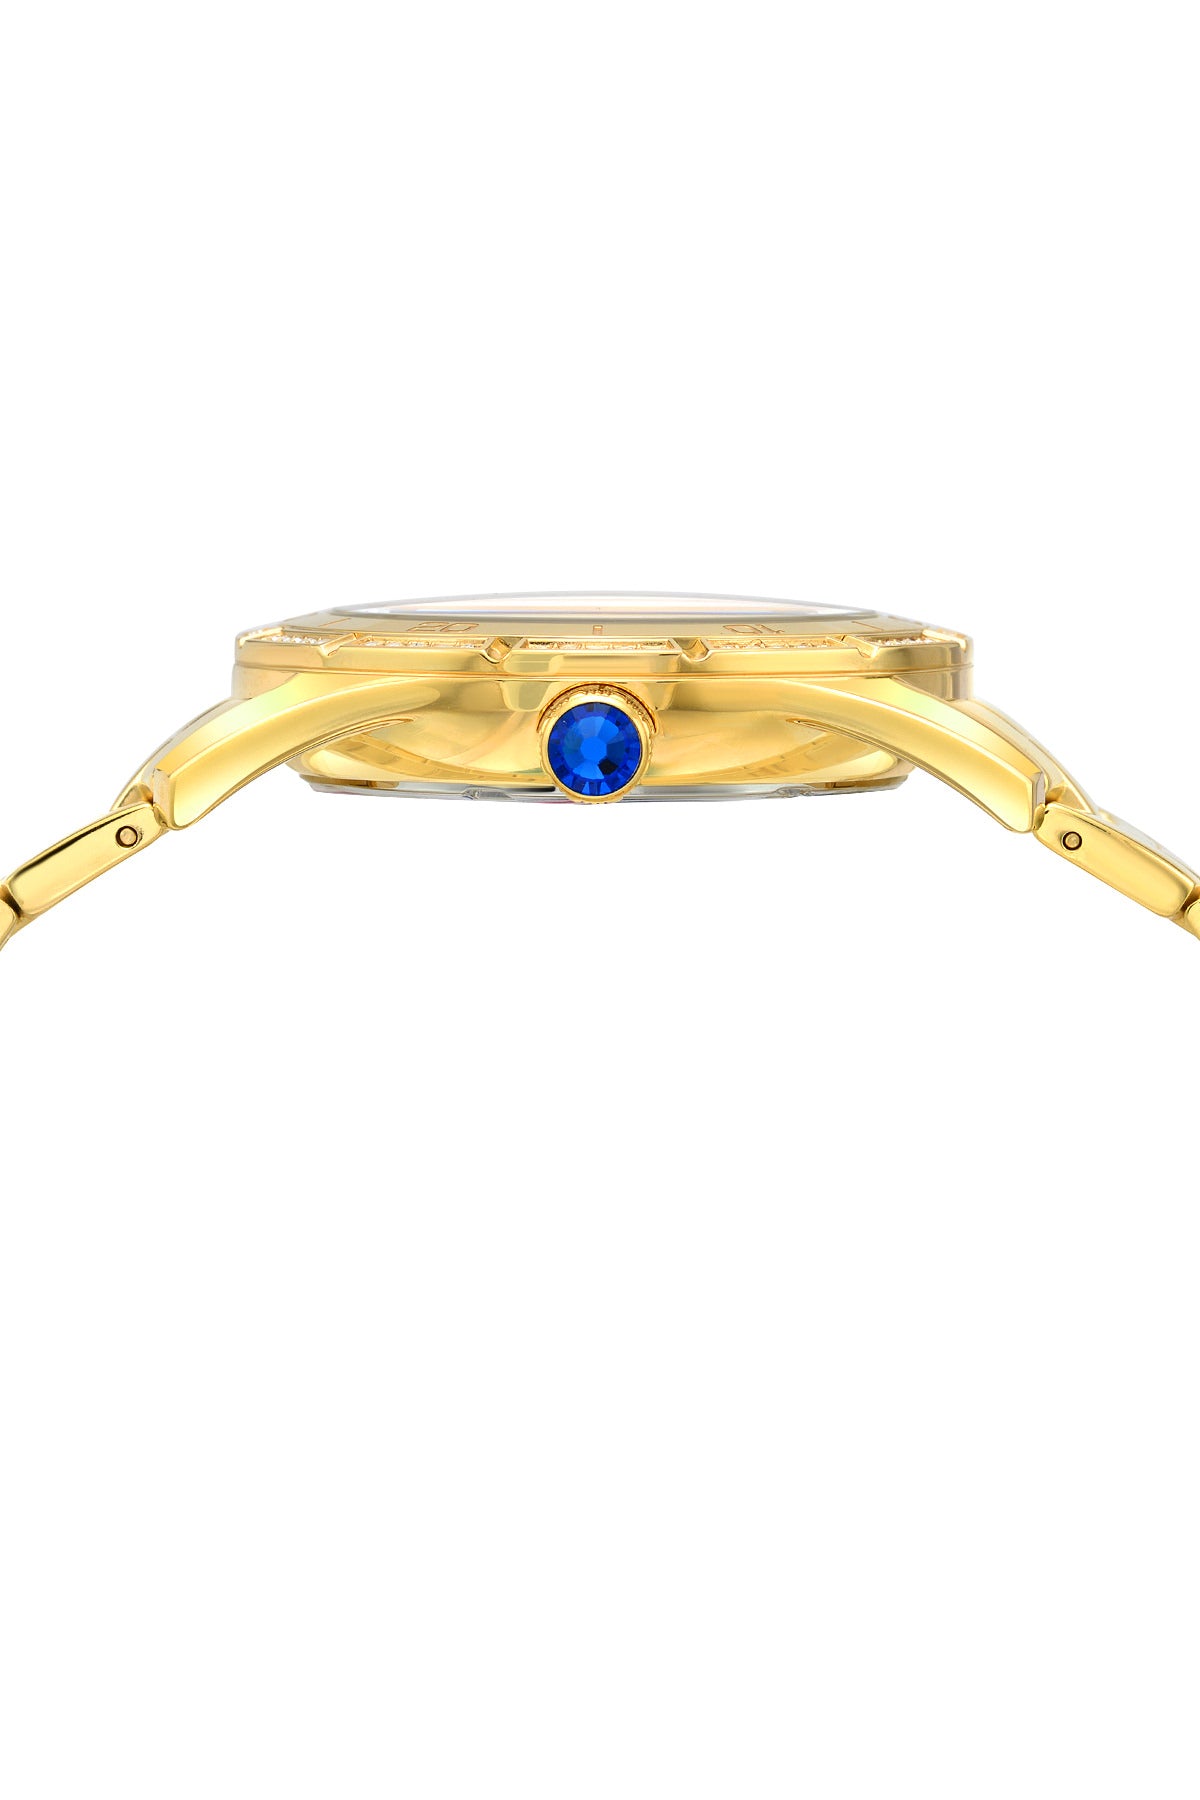 Porsamo Bleu Valentina luxury women's stainless steel watch, gold, white 541BVAS